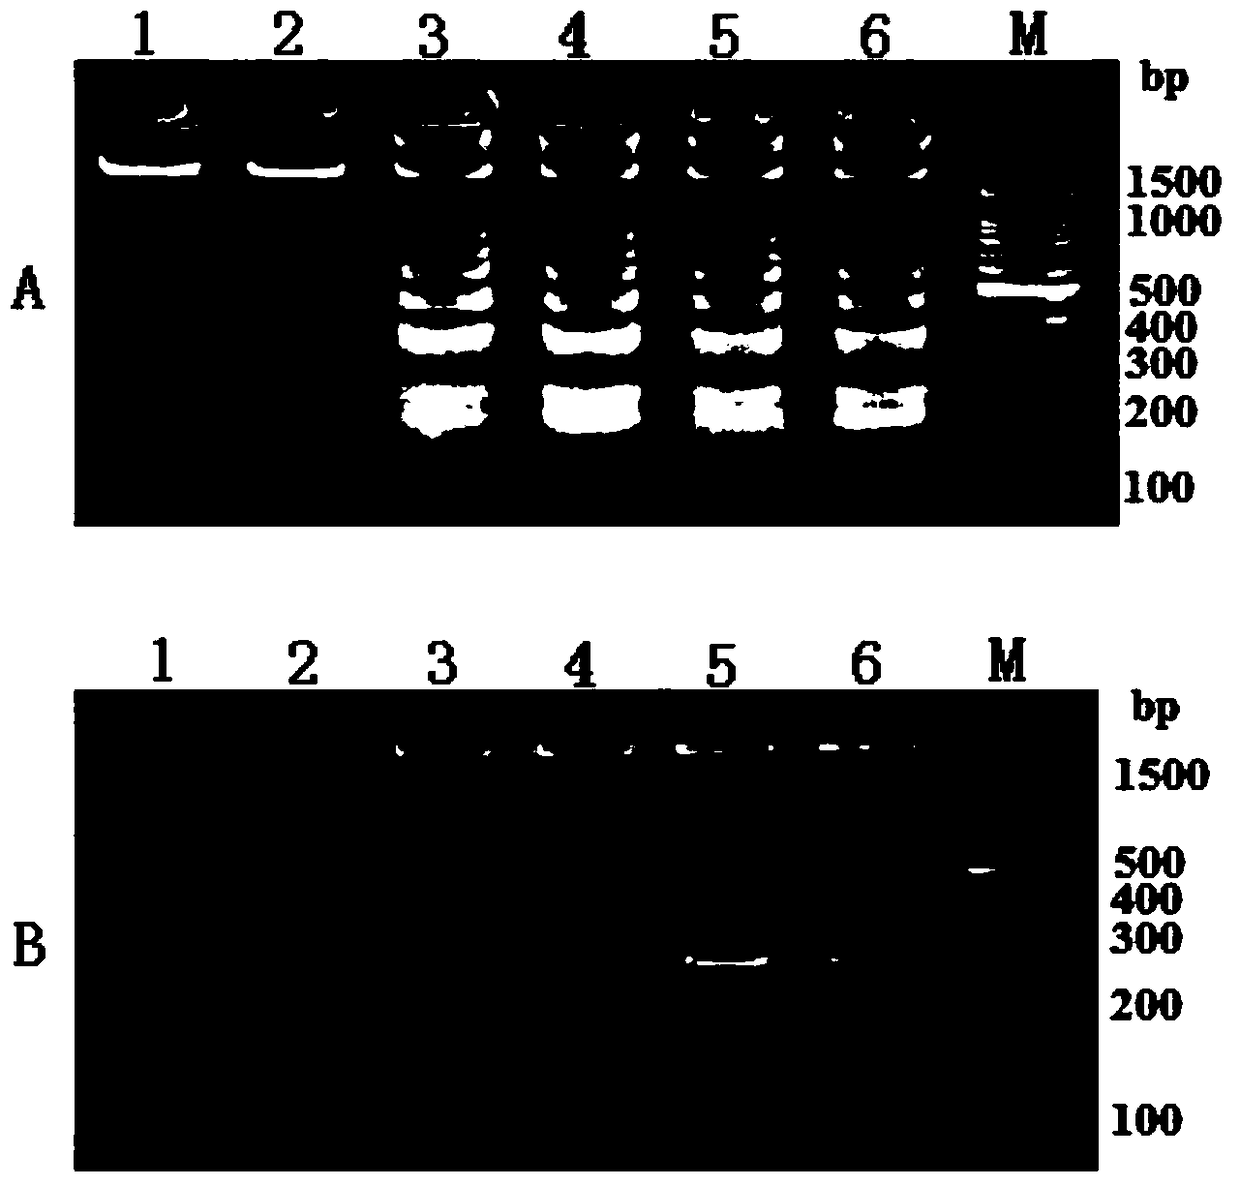 Dual-lamp method for simultaneous detection of Vibrio parahaemolyticus and Vibrio vulnificus